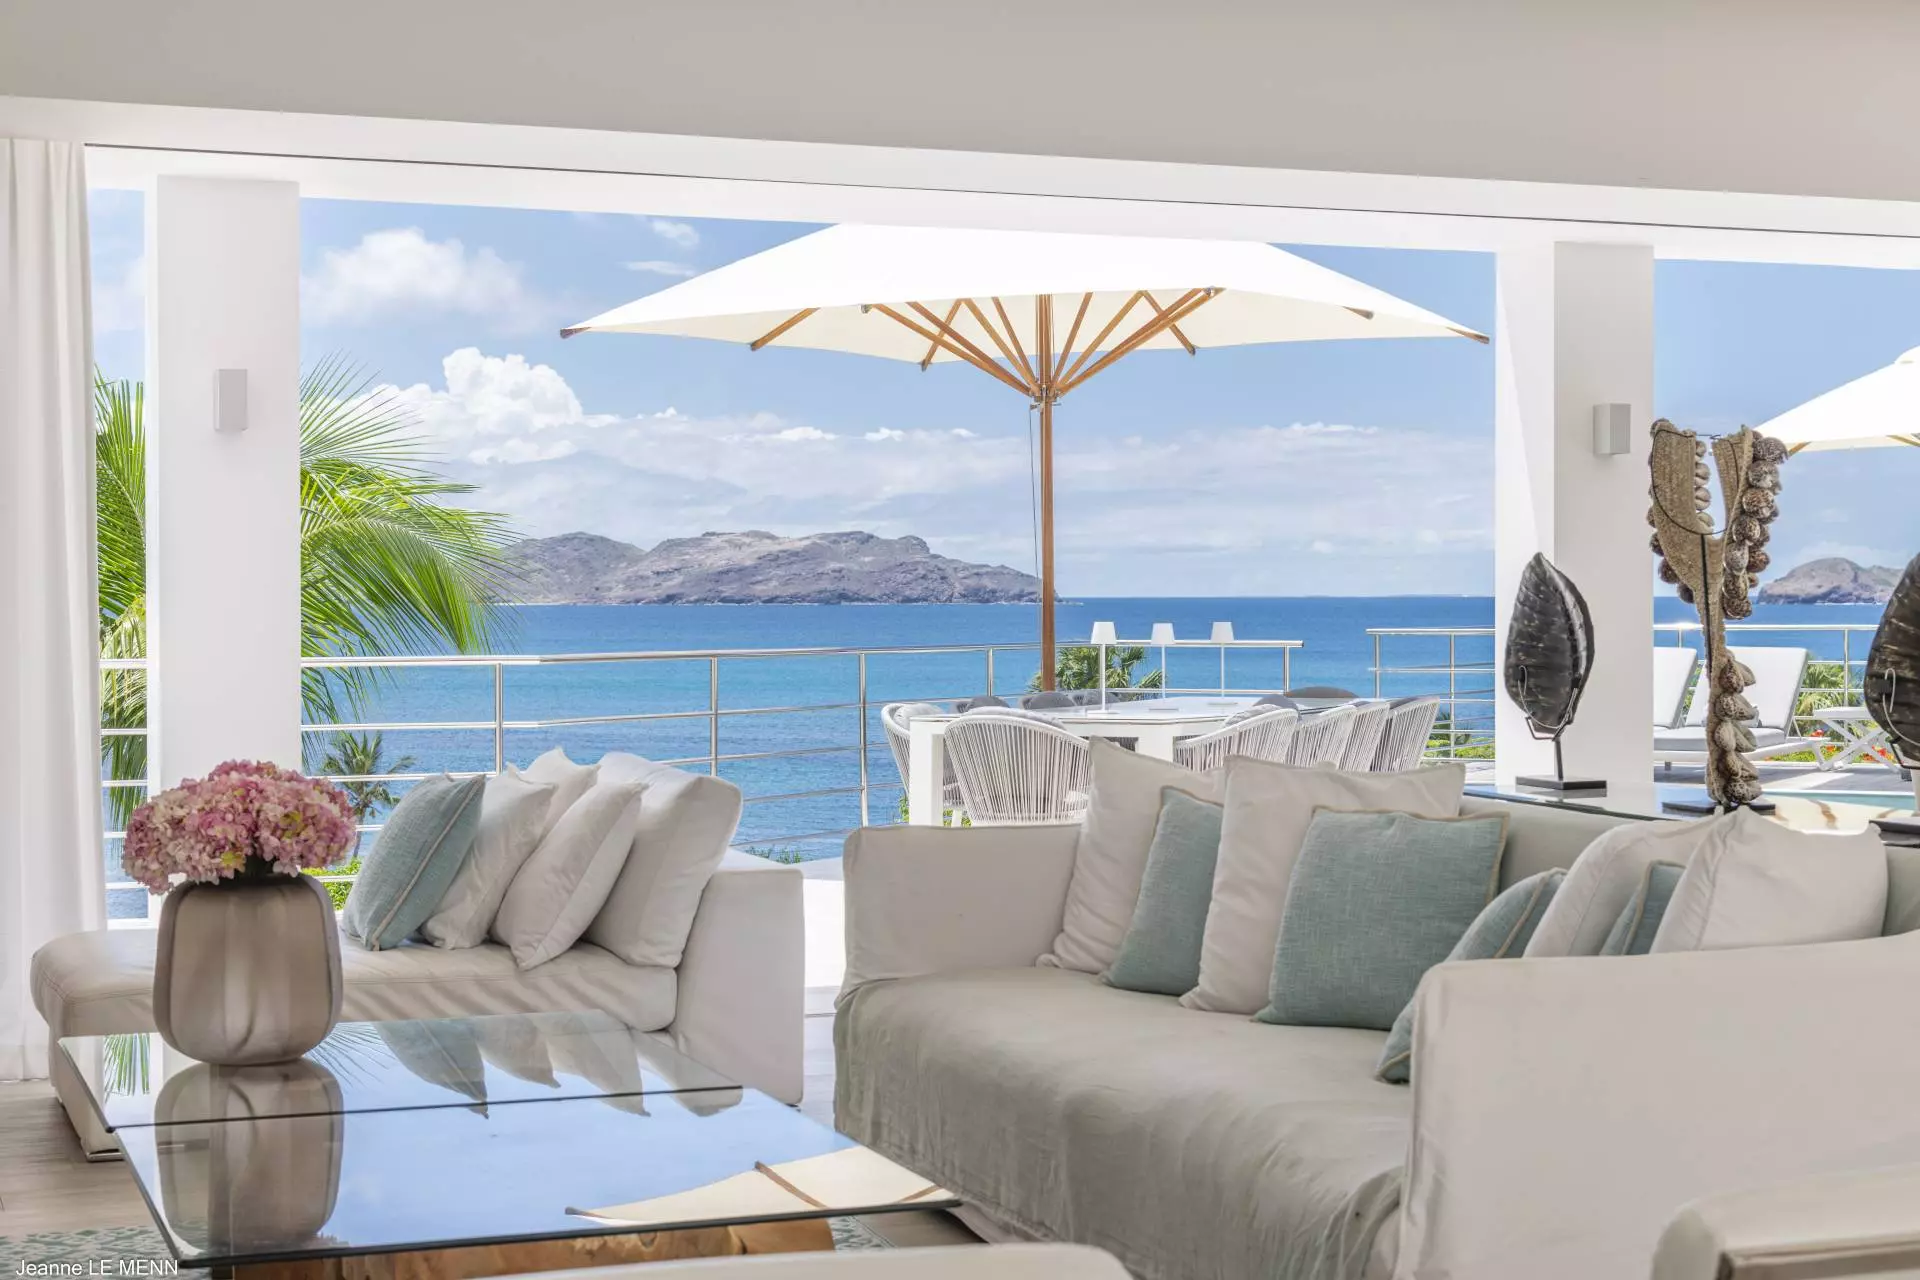 Villa Avenstar, St-Barts Luxury Vacations Rental, Caribbean